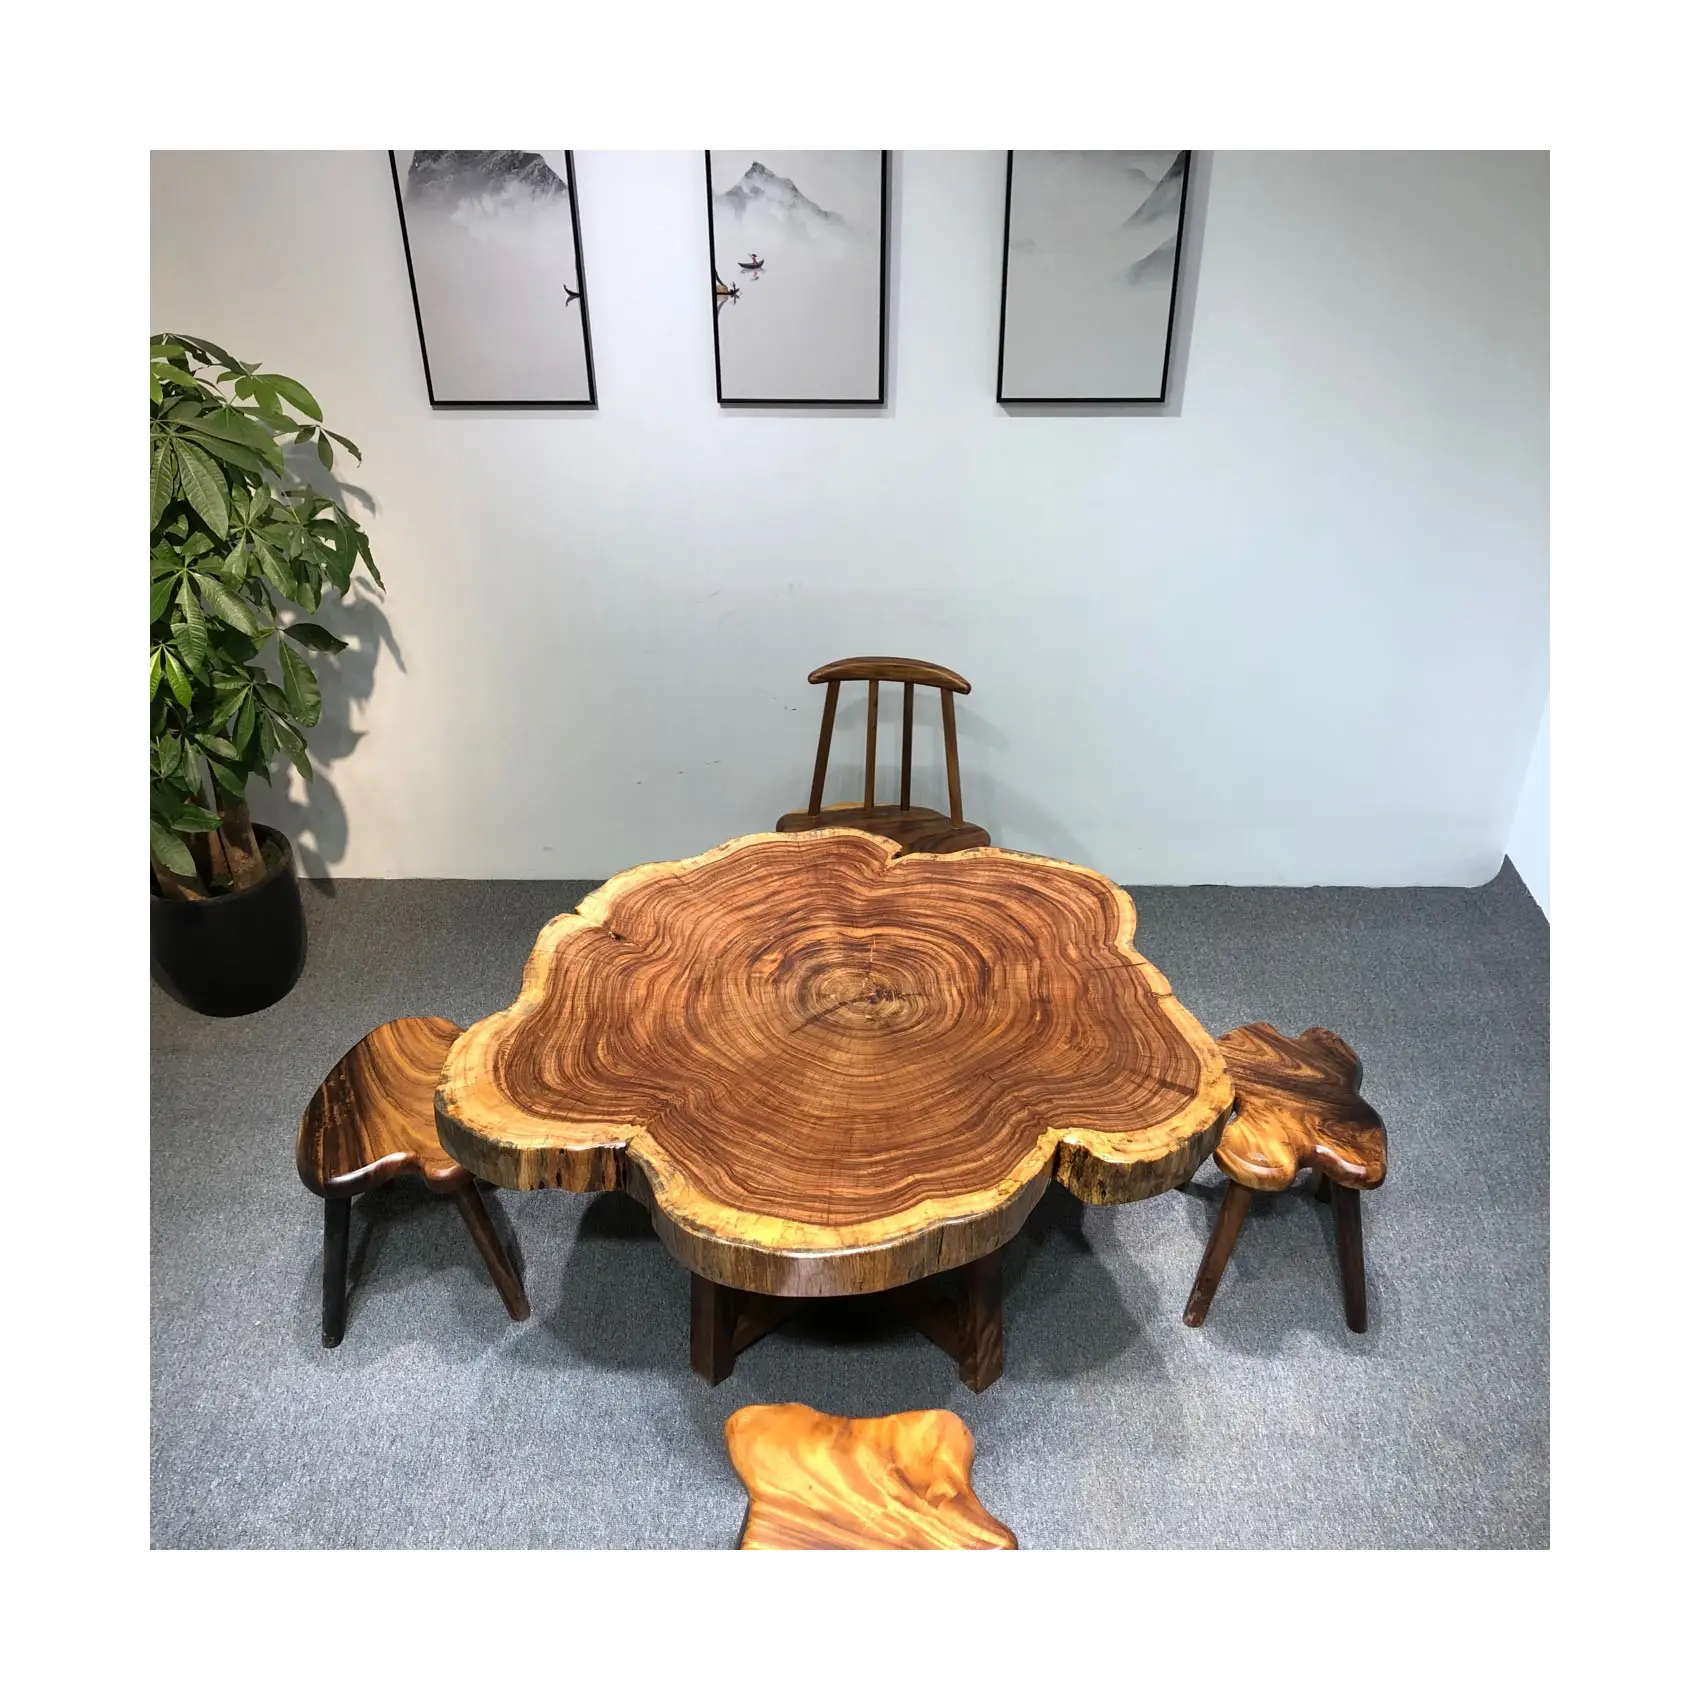 Habitación irregular en forma de ronda bajo tocón de árbol de té de borde vivo tronco de árbol de madera maciza mesa de café